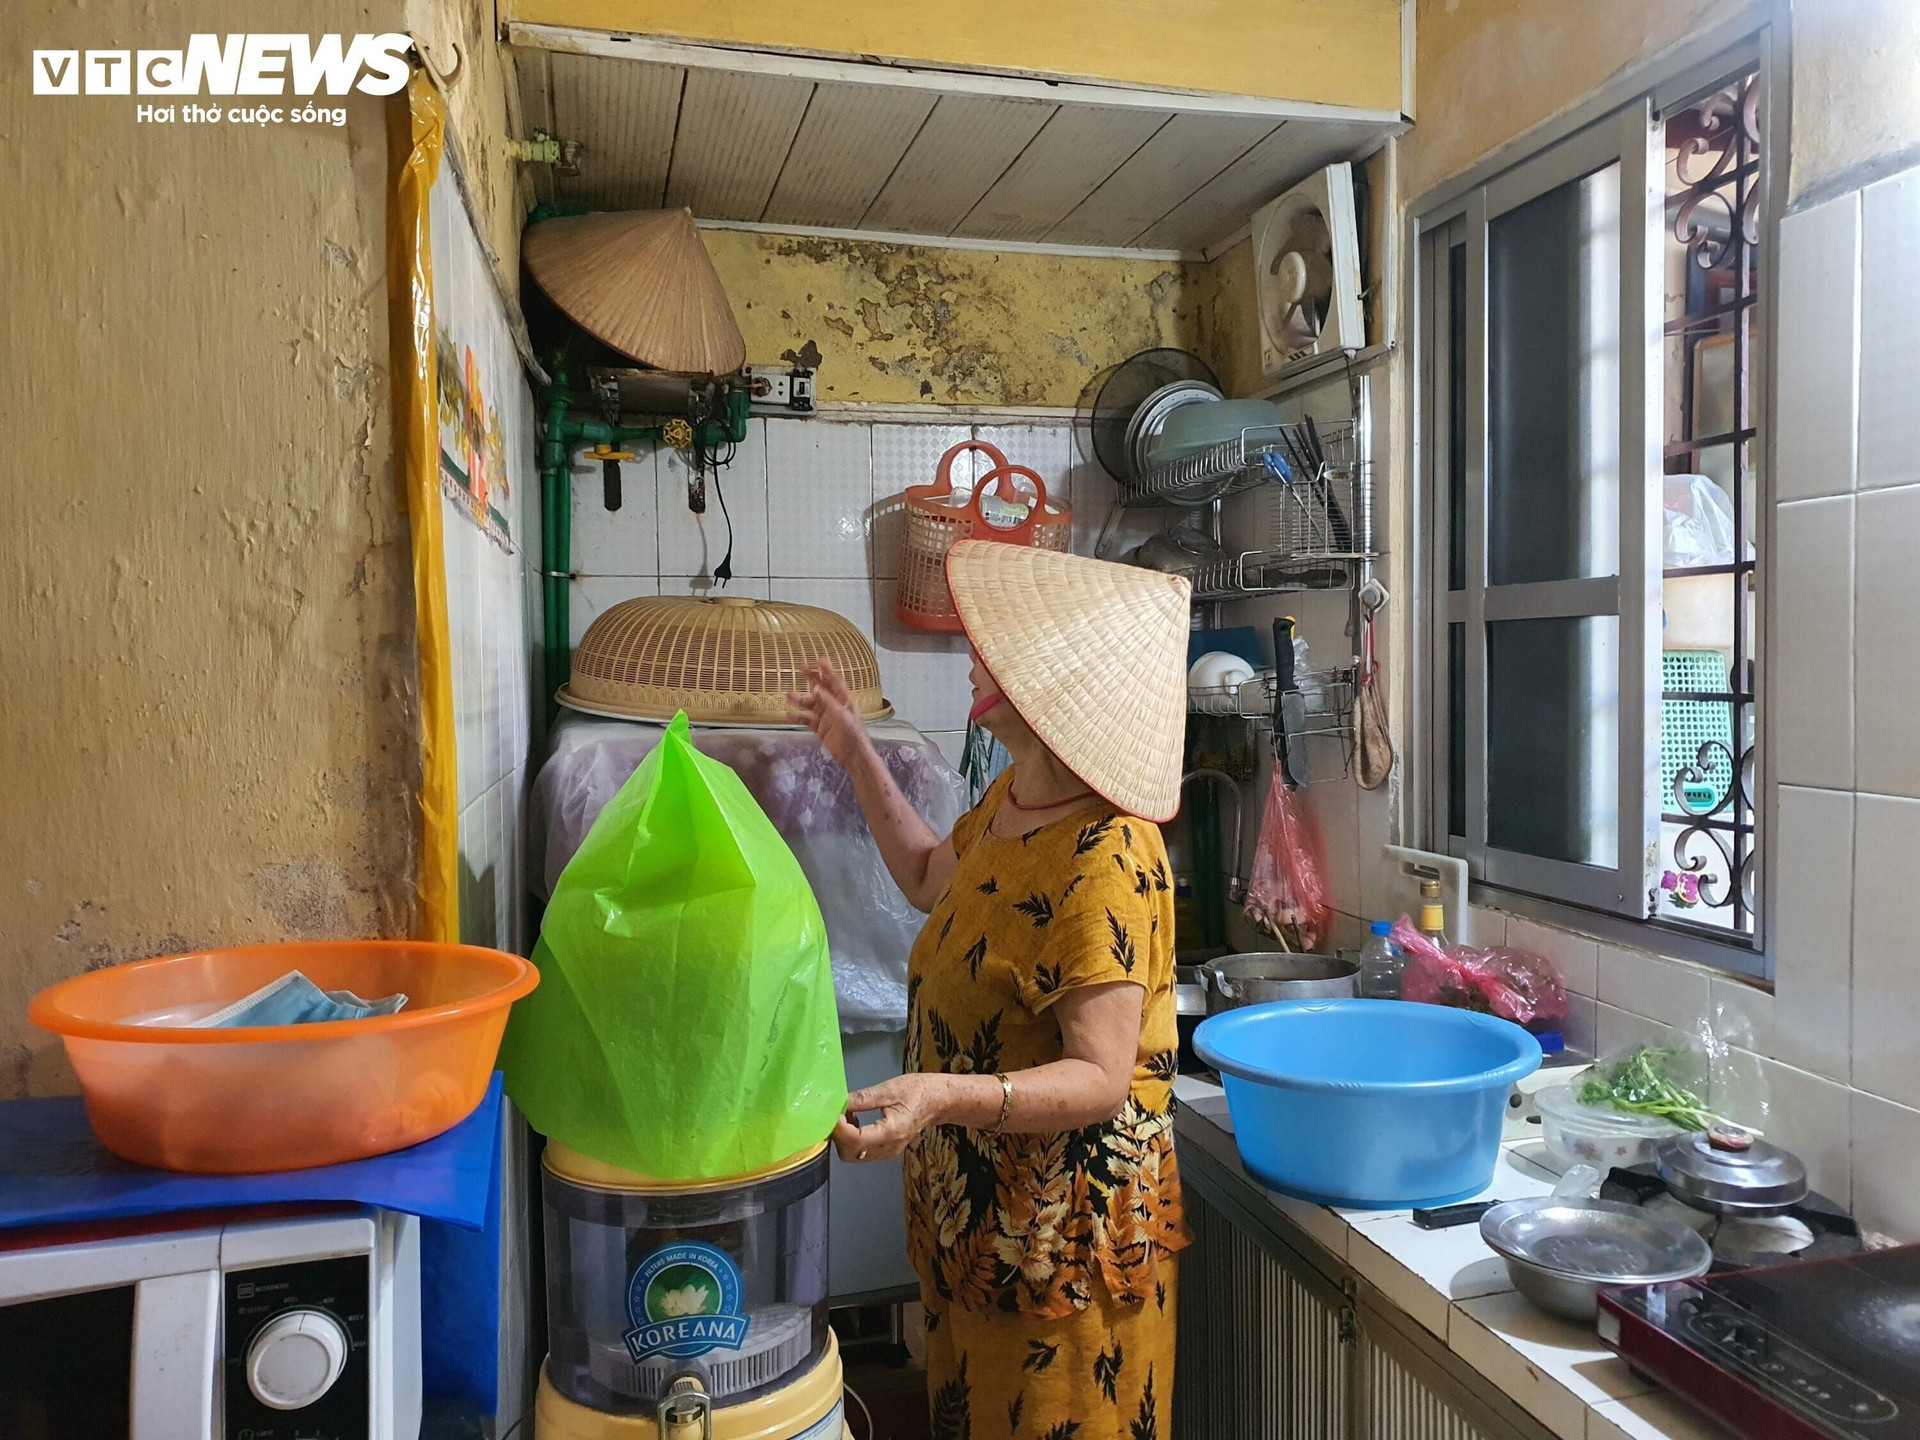 Trong gian bếp của gia đình bà Trần Thị Minh Anh (81 tuổi) nước ngấm từ tầng trên nhỏ giọt xuống hàng ngày, bà buộc phải dùng túi nilon để bọc lại những vật dụng sinh hoạt có trong phòng bếp.